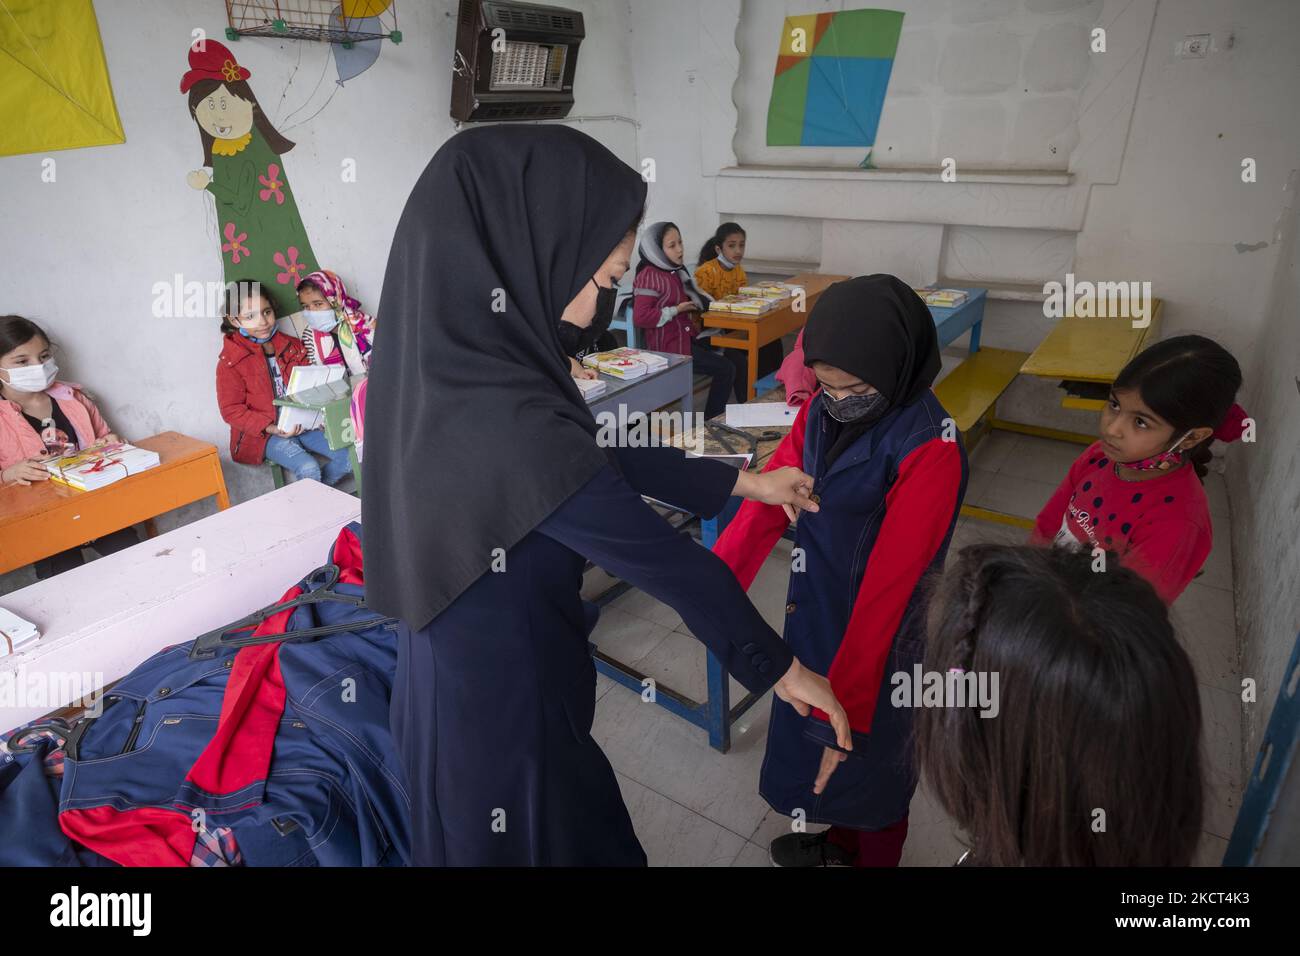 Insegnante afghana, Mahboobeh Mohammadi-32 Chi è nato in Iran, verifica le dimensioni di una divisa scolastica per una studentessa afghana rifugiata in un'aula alla scuola di Farhang nel primo giorno del nuovo anno accademico? Nel sud di Teheran il 1 novembre 2021. La scuola di Farhang è stata fondata nel 2000 dal rifugiato afgano Nader Mousavi che si è laureato in sociologia presso l'Università di Teheran, per i bambini rifugiati afghani, E ora, due anni dopo l'inizio dell'epidemia COVID-19 in Iran, dove la scuola operava a tempo parziale, ha iniziato ad operare scolaresche a tempo pieno e afghane Foto Stock